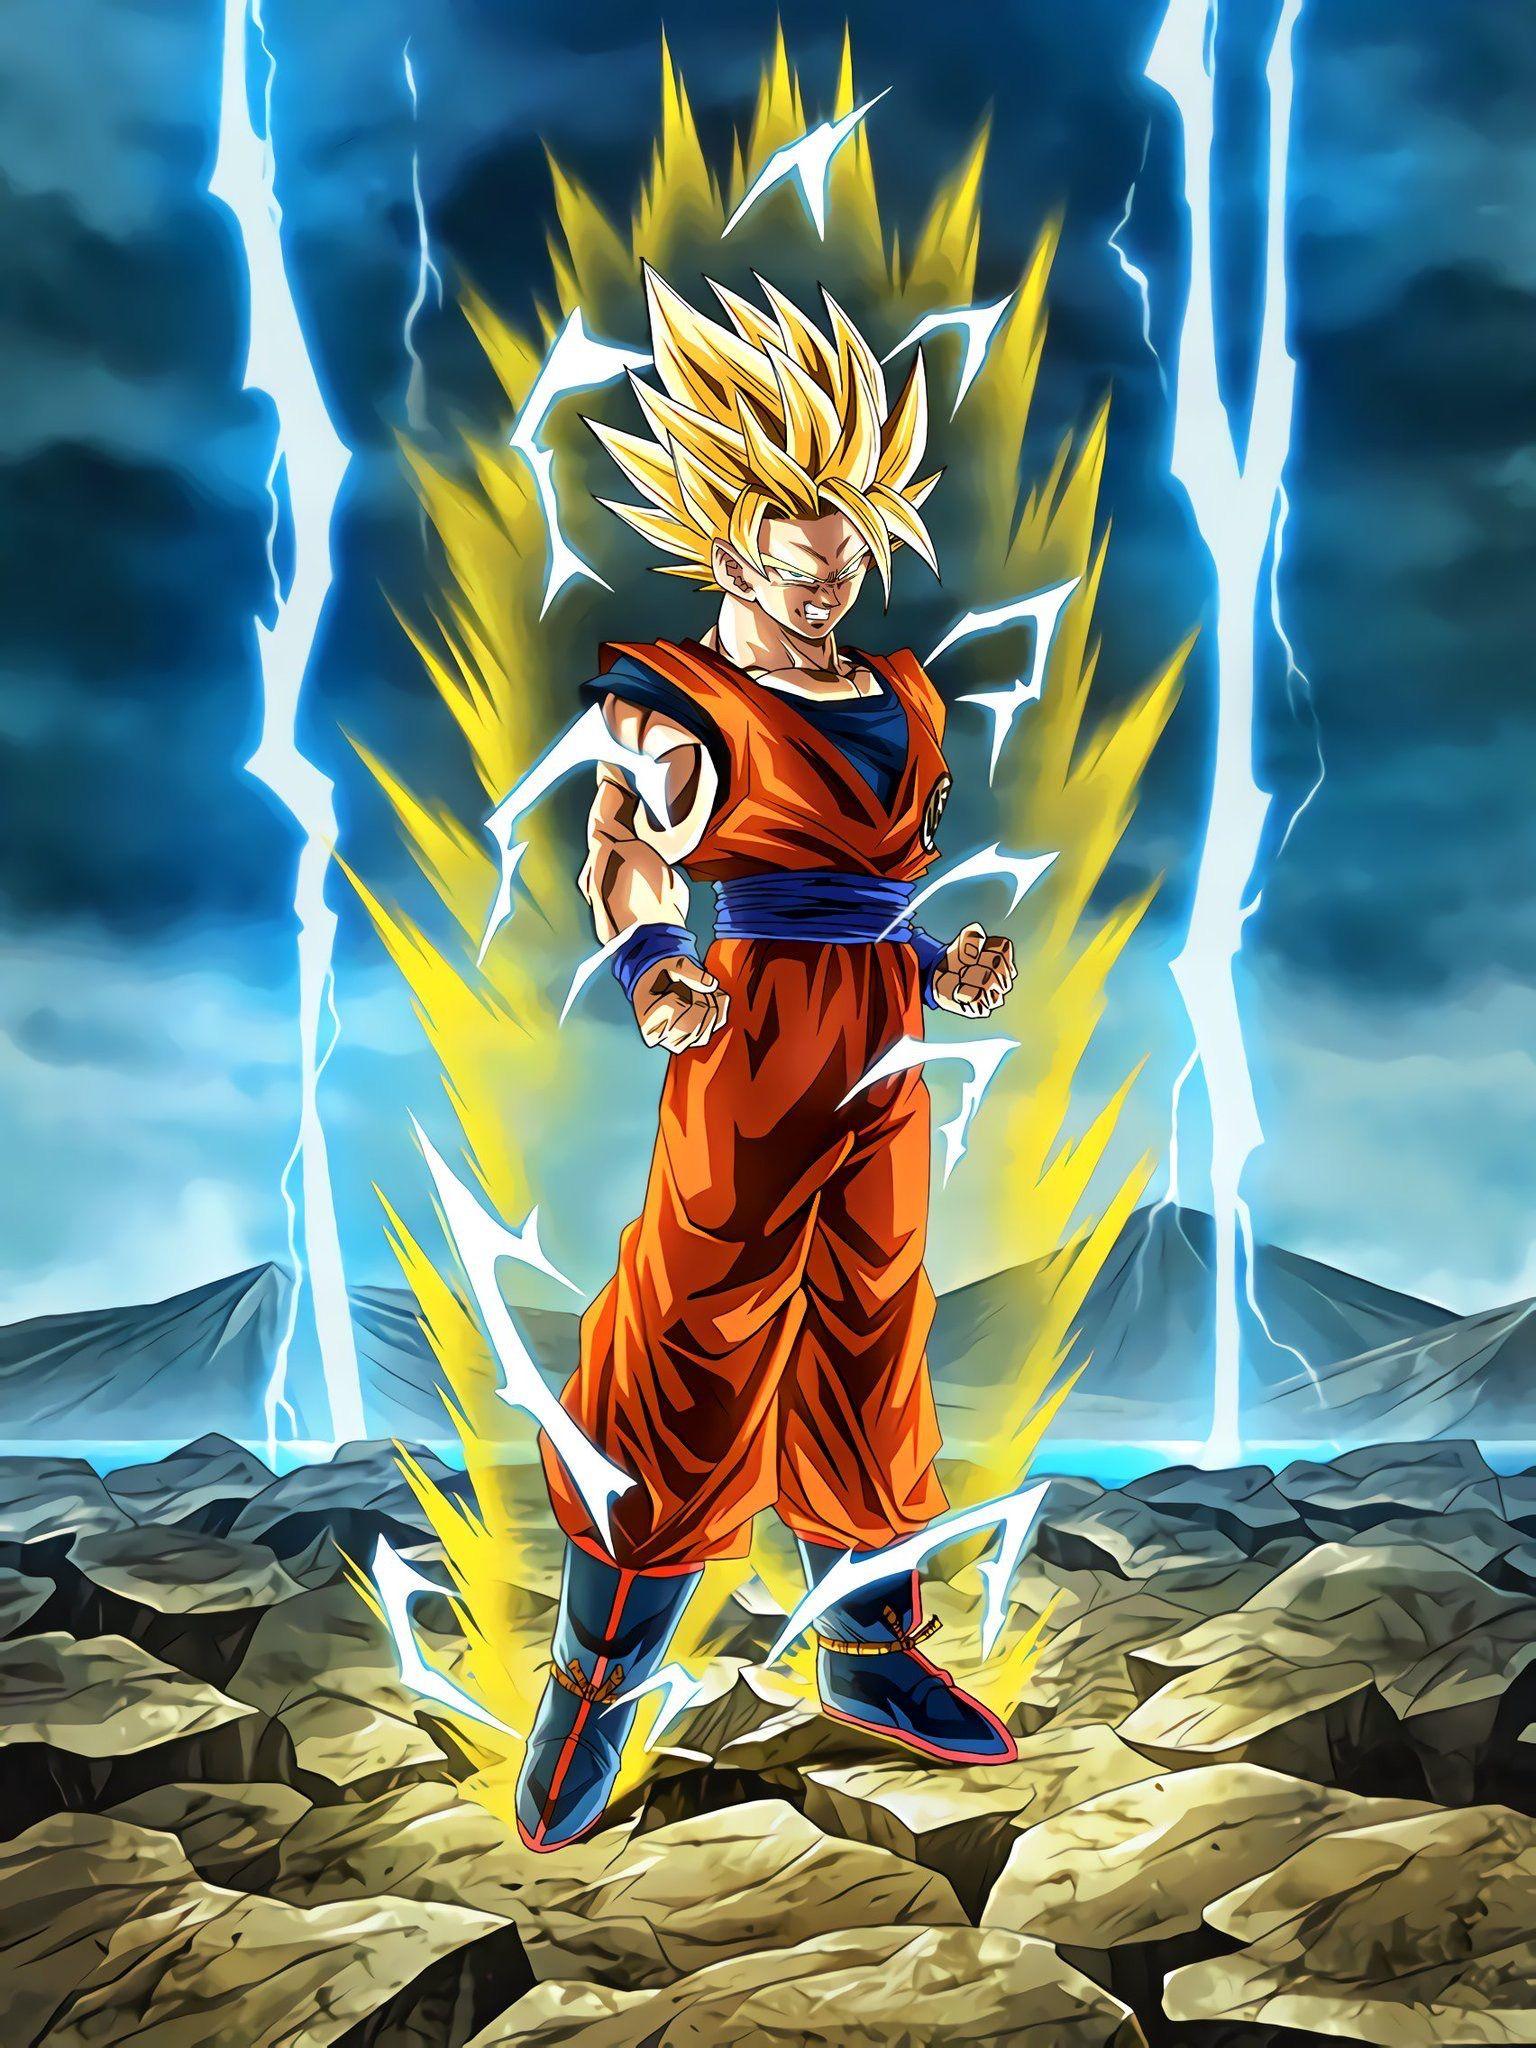 Goku Super Saiyan 2 Wallpapers - Top Free Goku Super Saiyan 2 Backgrounds - WallpaperAccess